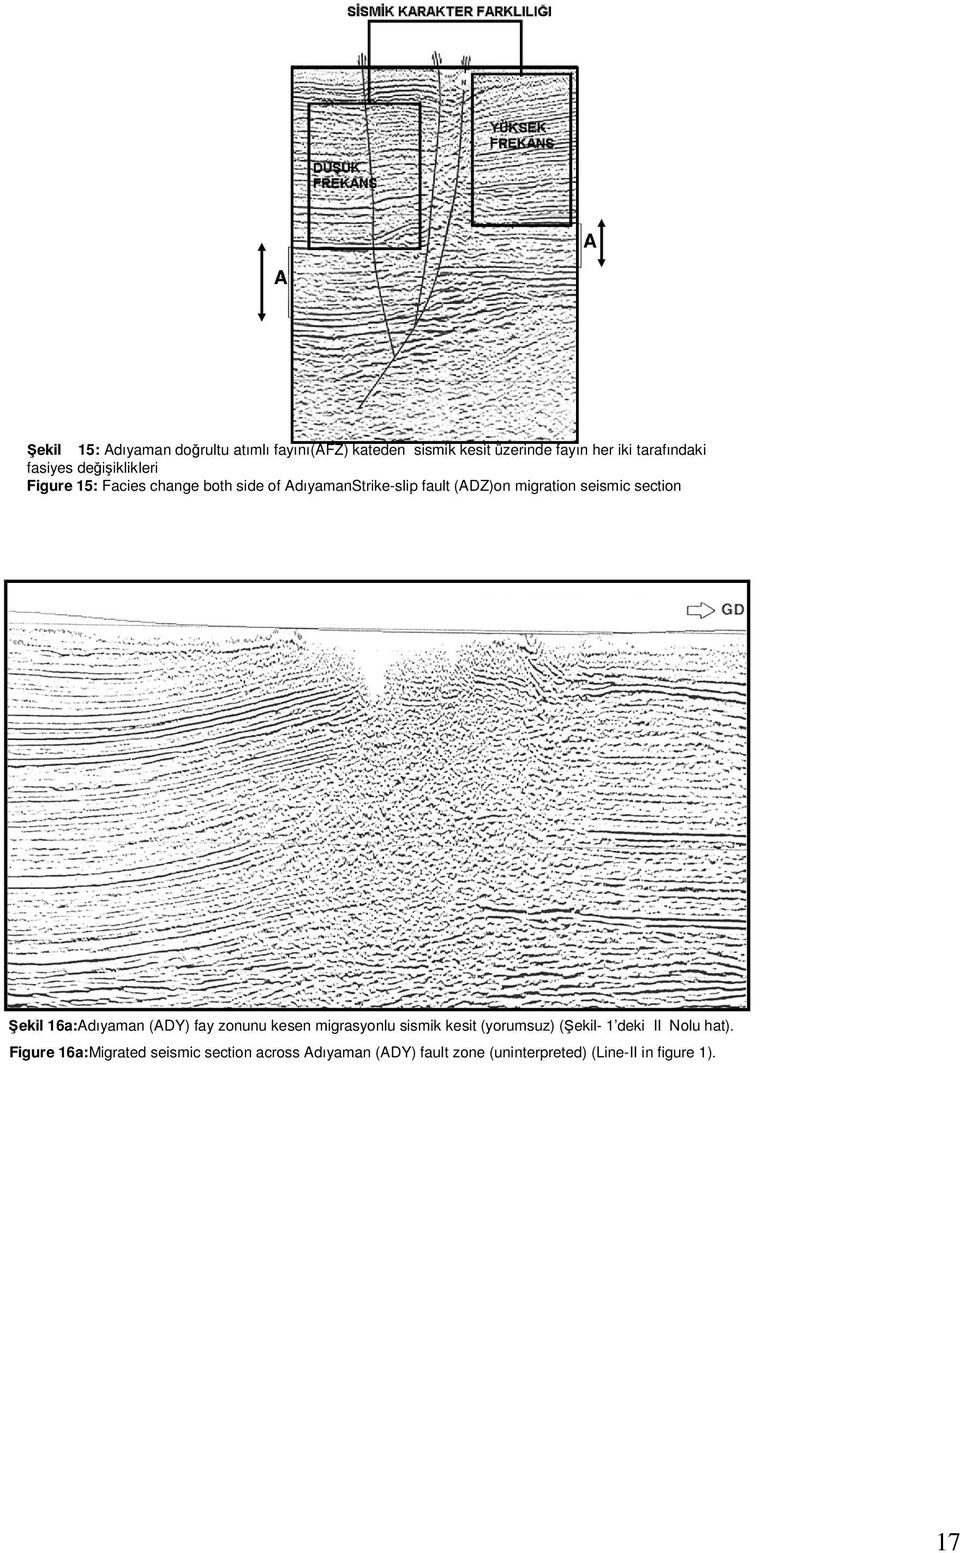 seismic section Şekil 16a:Adıyaman (ADY) fay zonunu kesen migrasyonlu sismik kesit (yorumsuz) (Şekil- 1 deki II